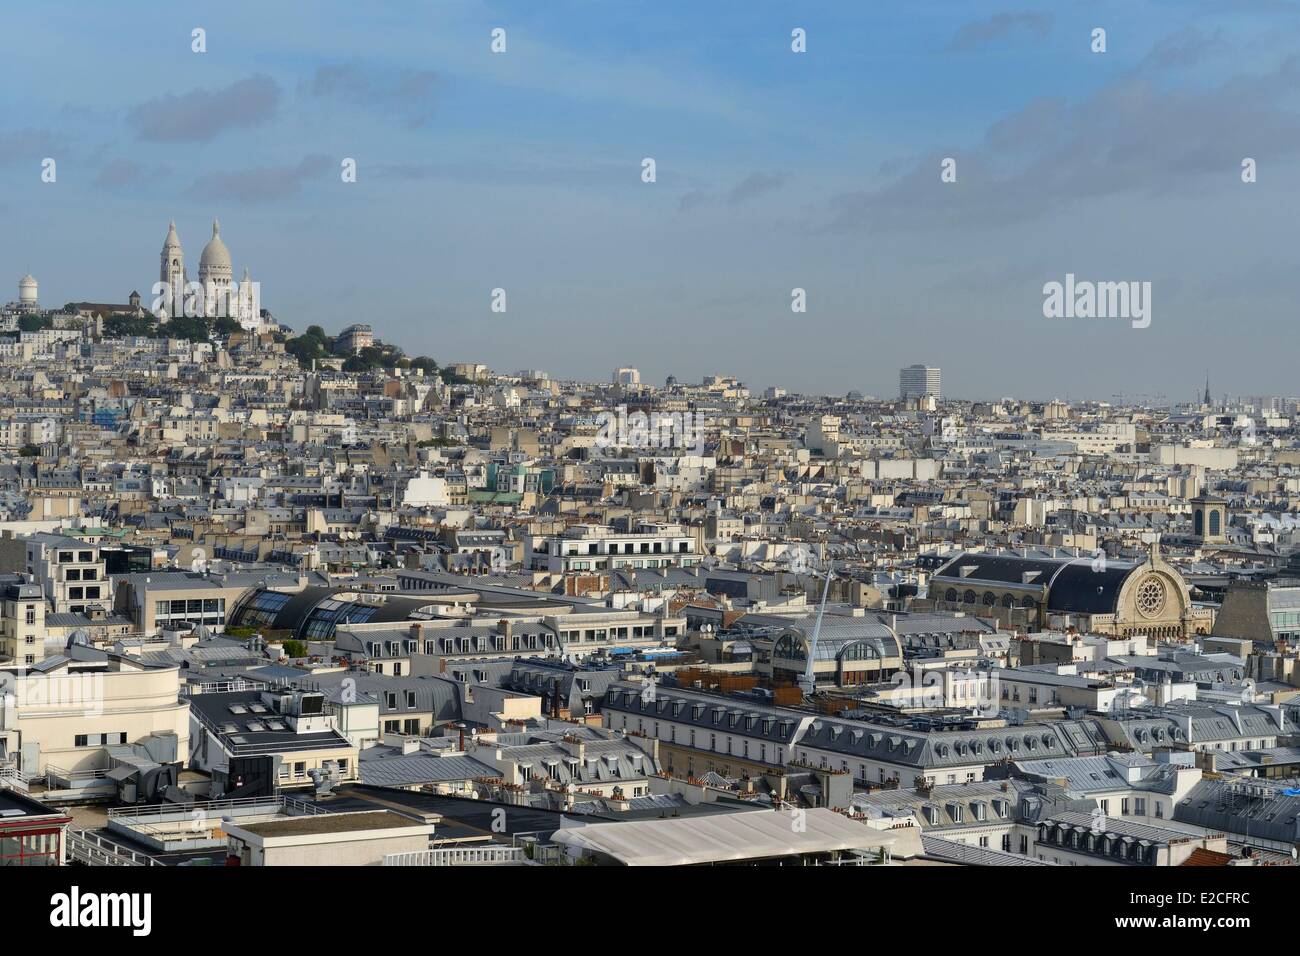 France, Paris, Basilique du Sacre Coeur (Sacred Heart Basilica) on the Butte Montmartre Stock Photo